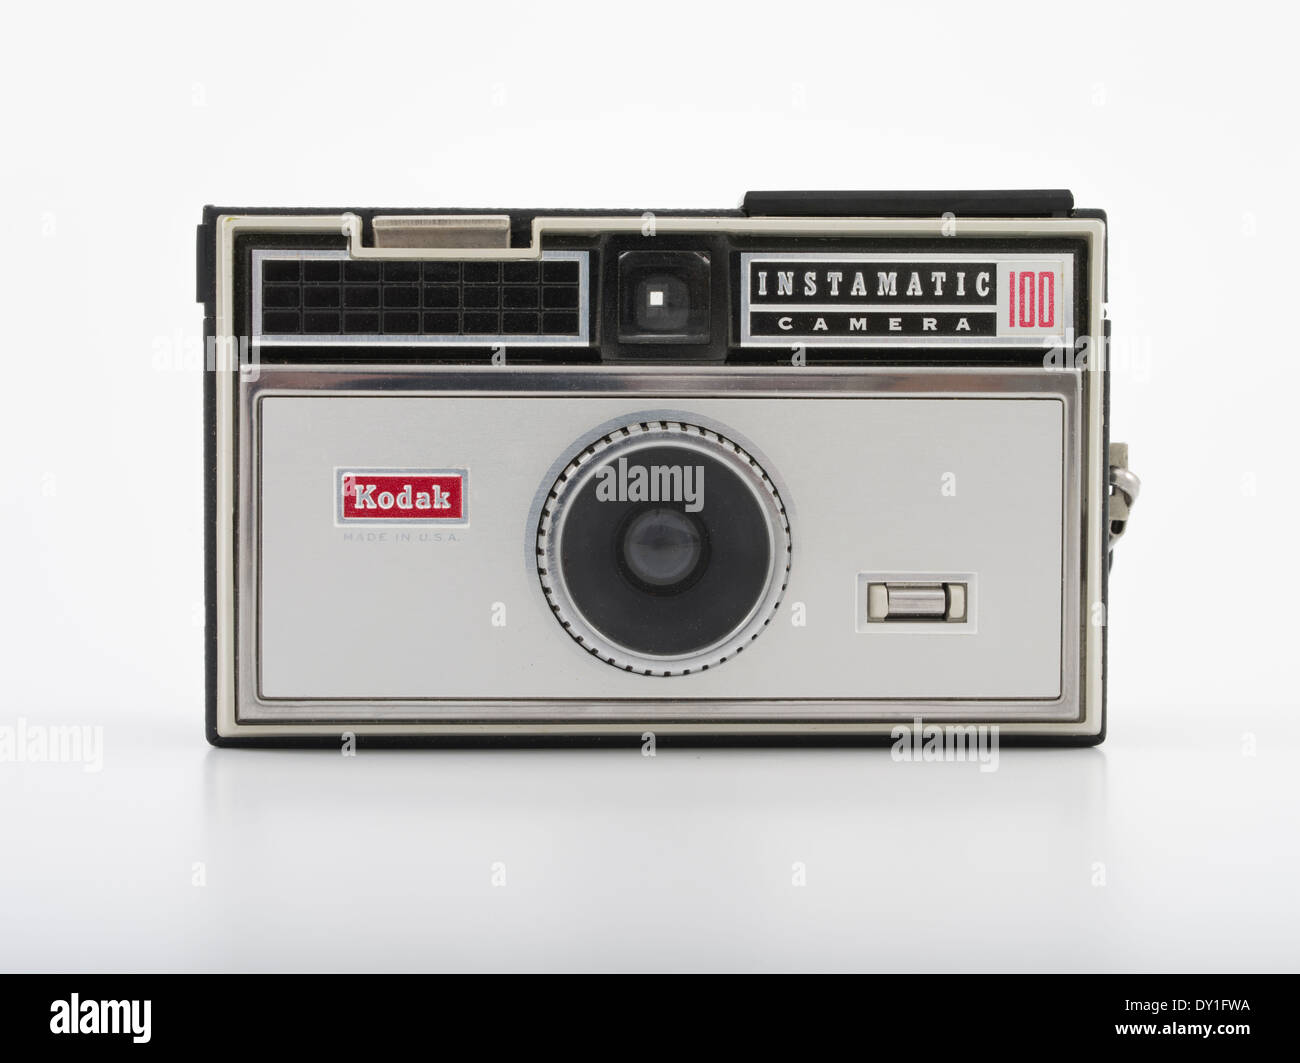 Film Kodak Instamatic 100 appareil photo avec flash qui utilise des films de format 126. 1963 Kodak. Banque D'Images